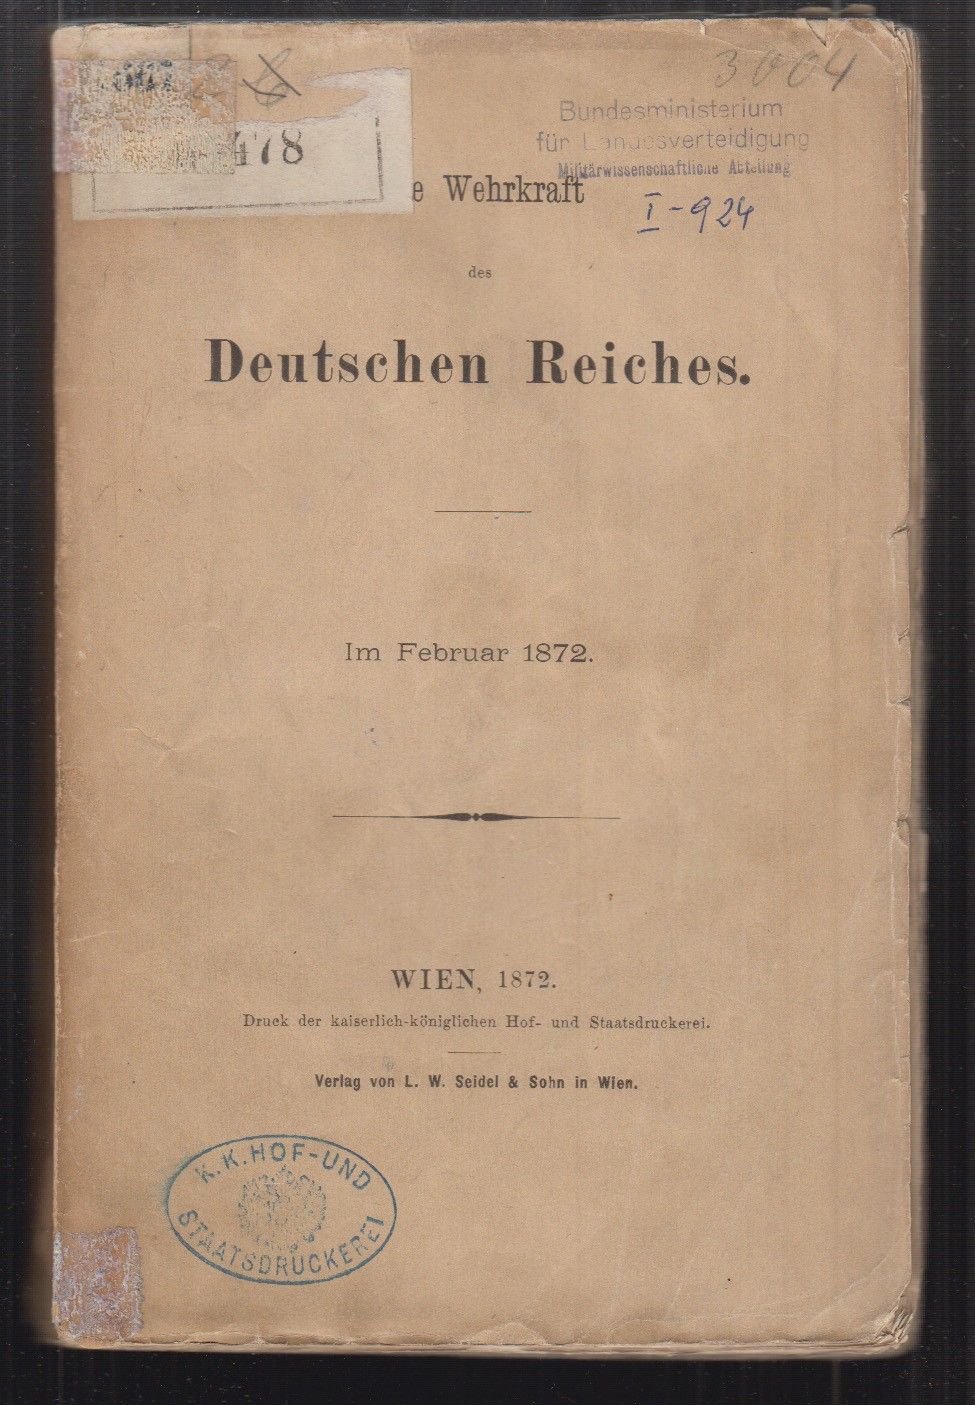  Die Wehrkraft des Deutschen Reiches. Im Februar 1872.